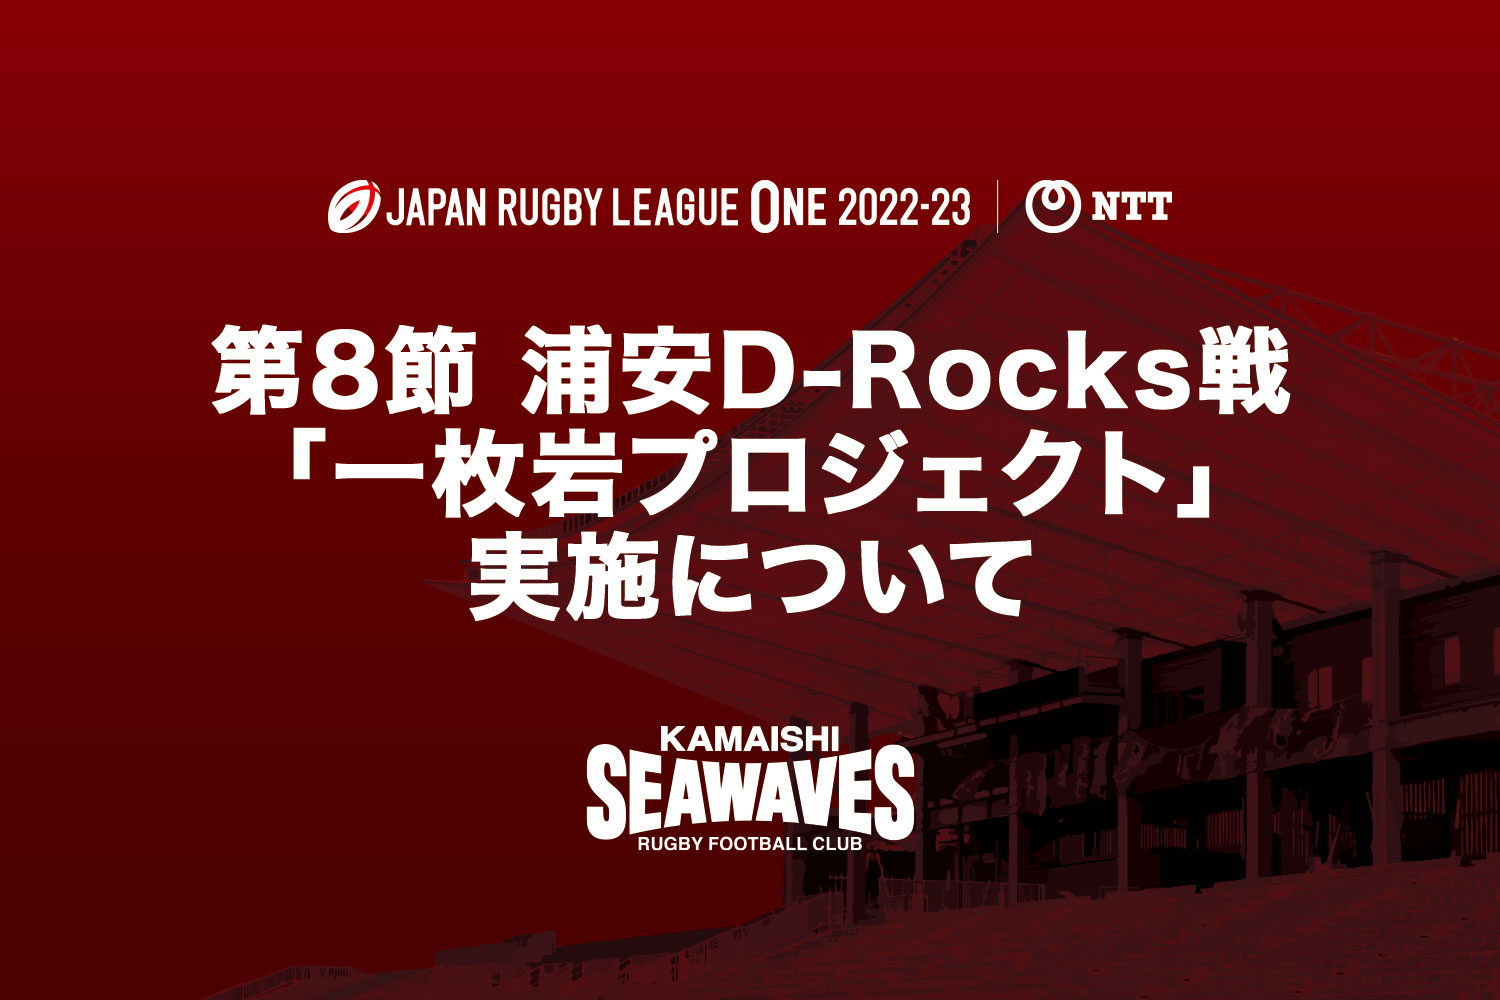 NTTリーグワン2022-23 D2 第8節 浦安D-Rocks戦 「一枚岩プロジェクト」実施について